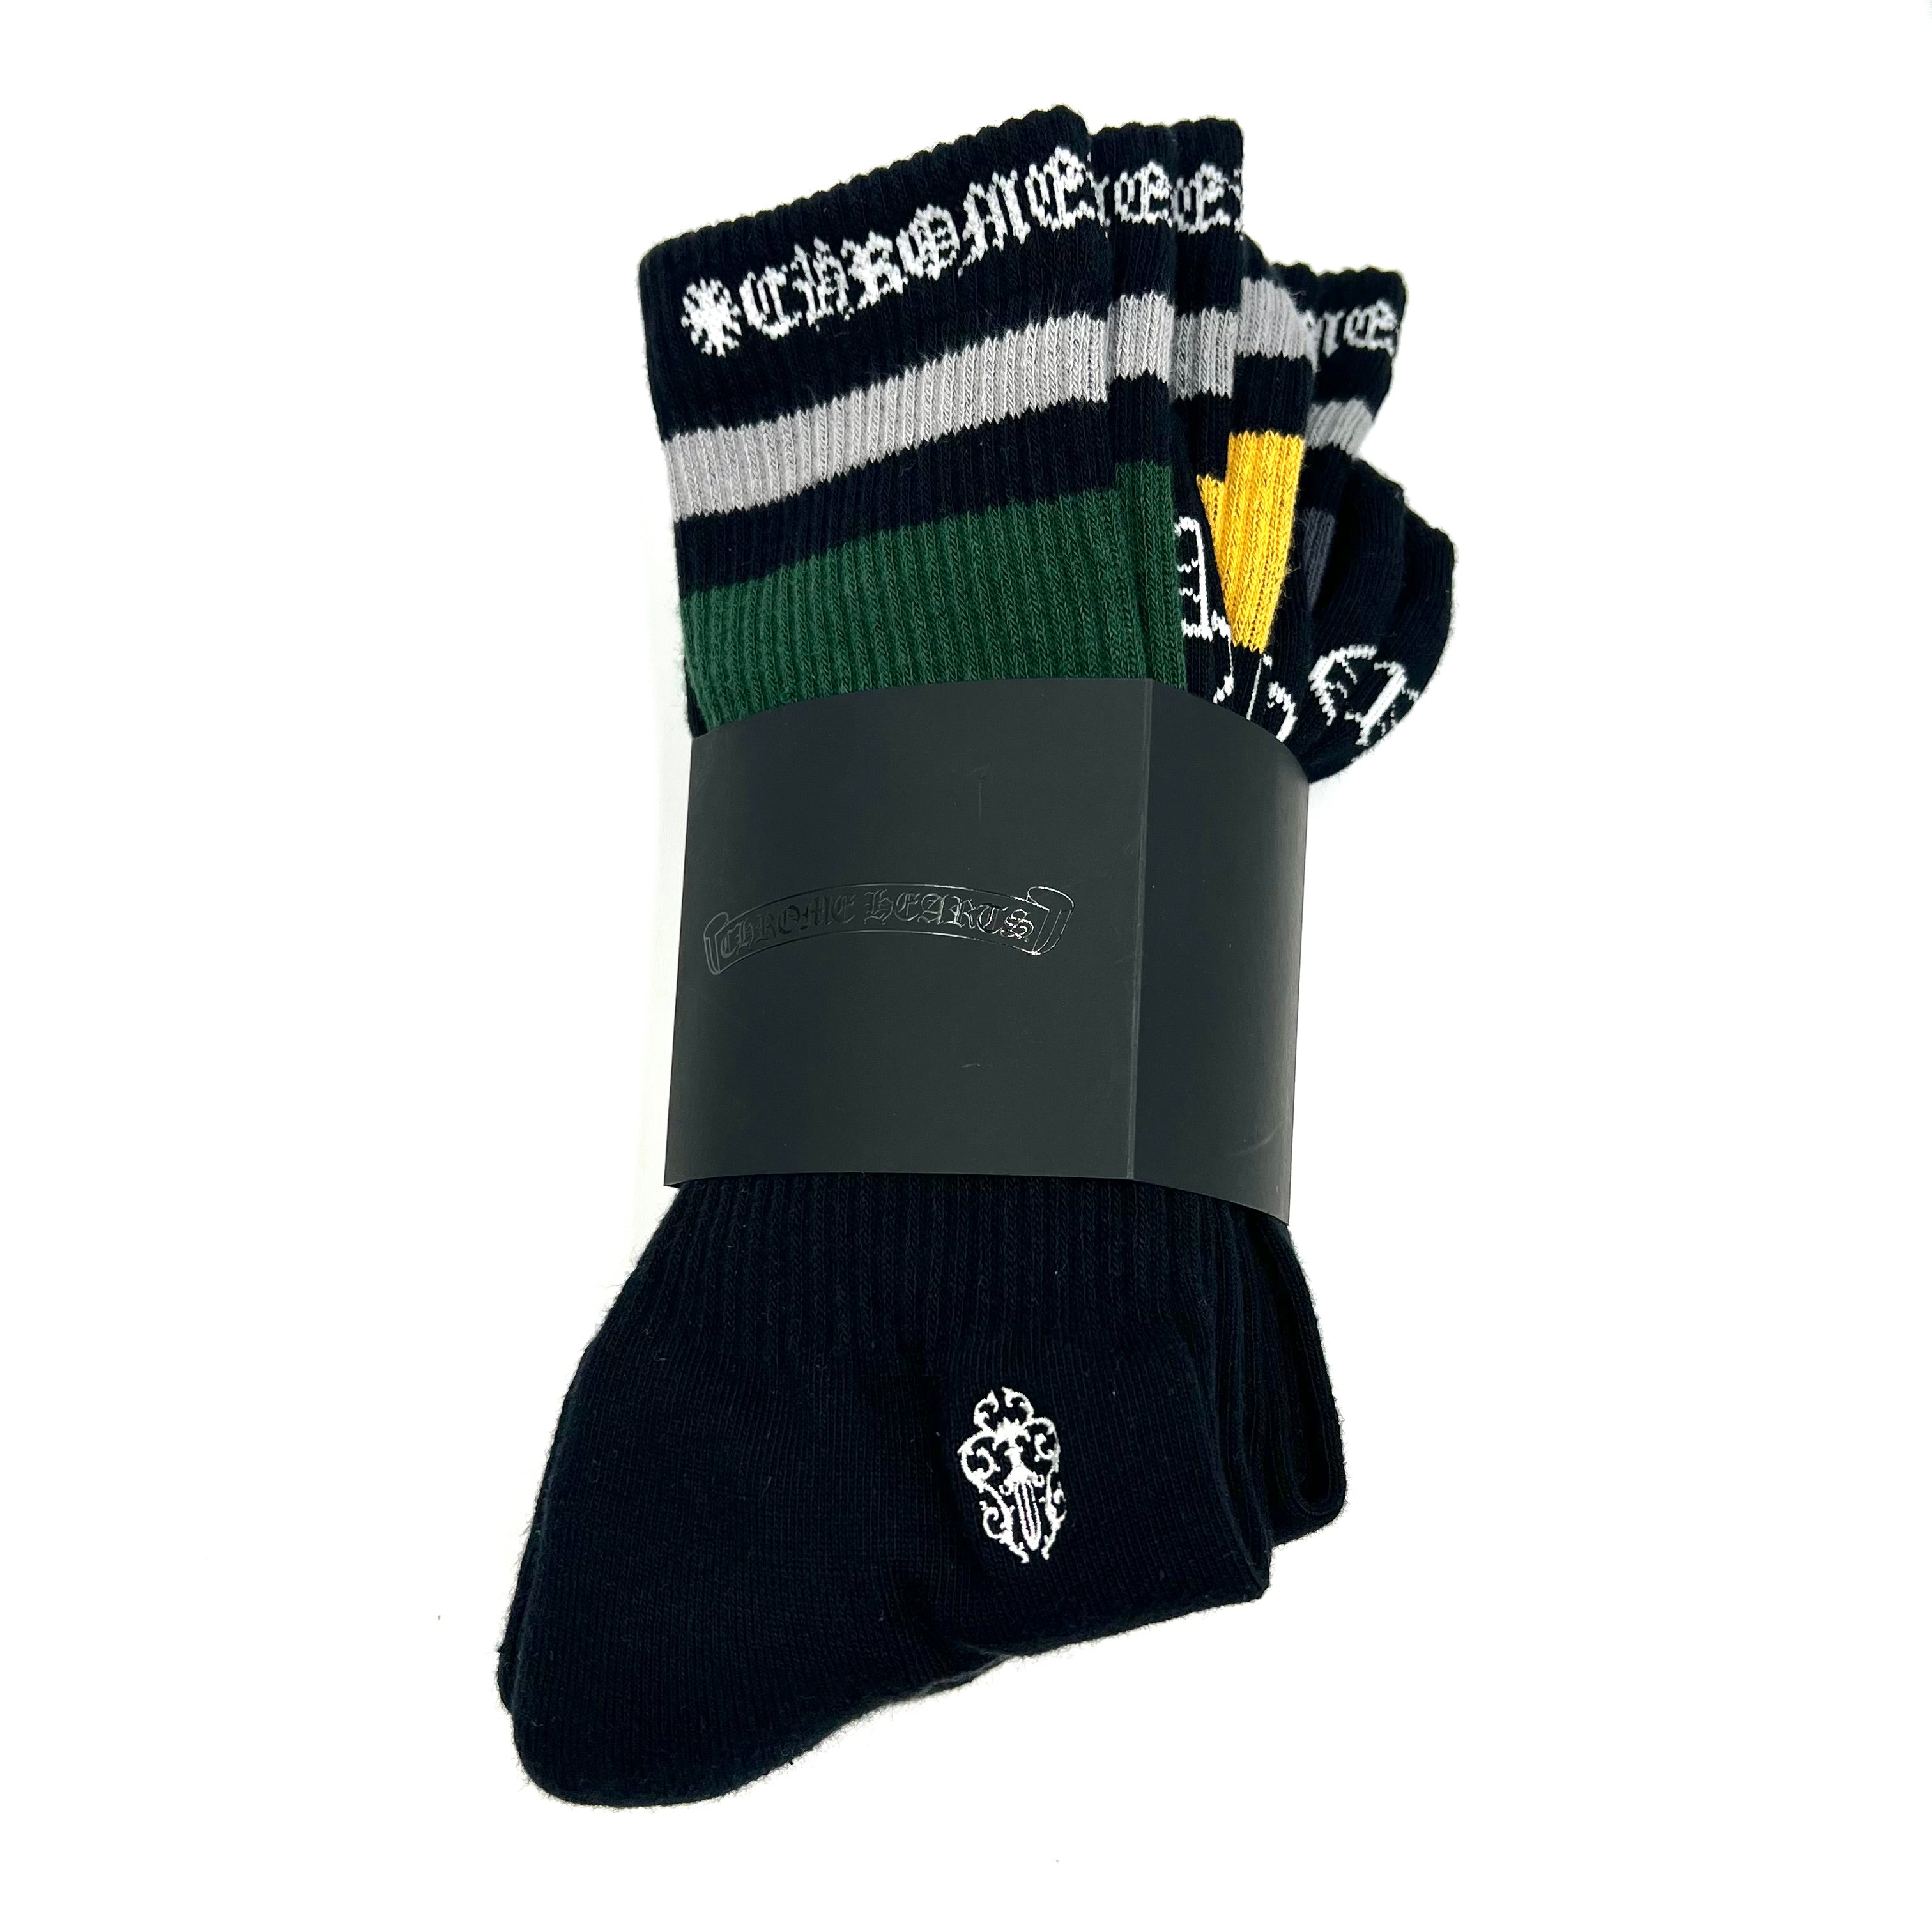 3-Pack Stripe Socks Multicolor/Black